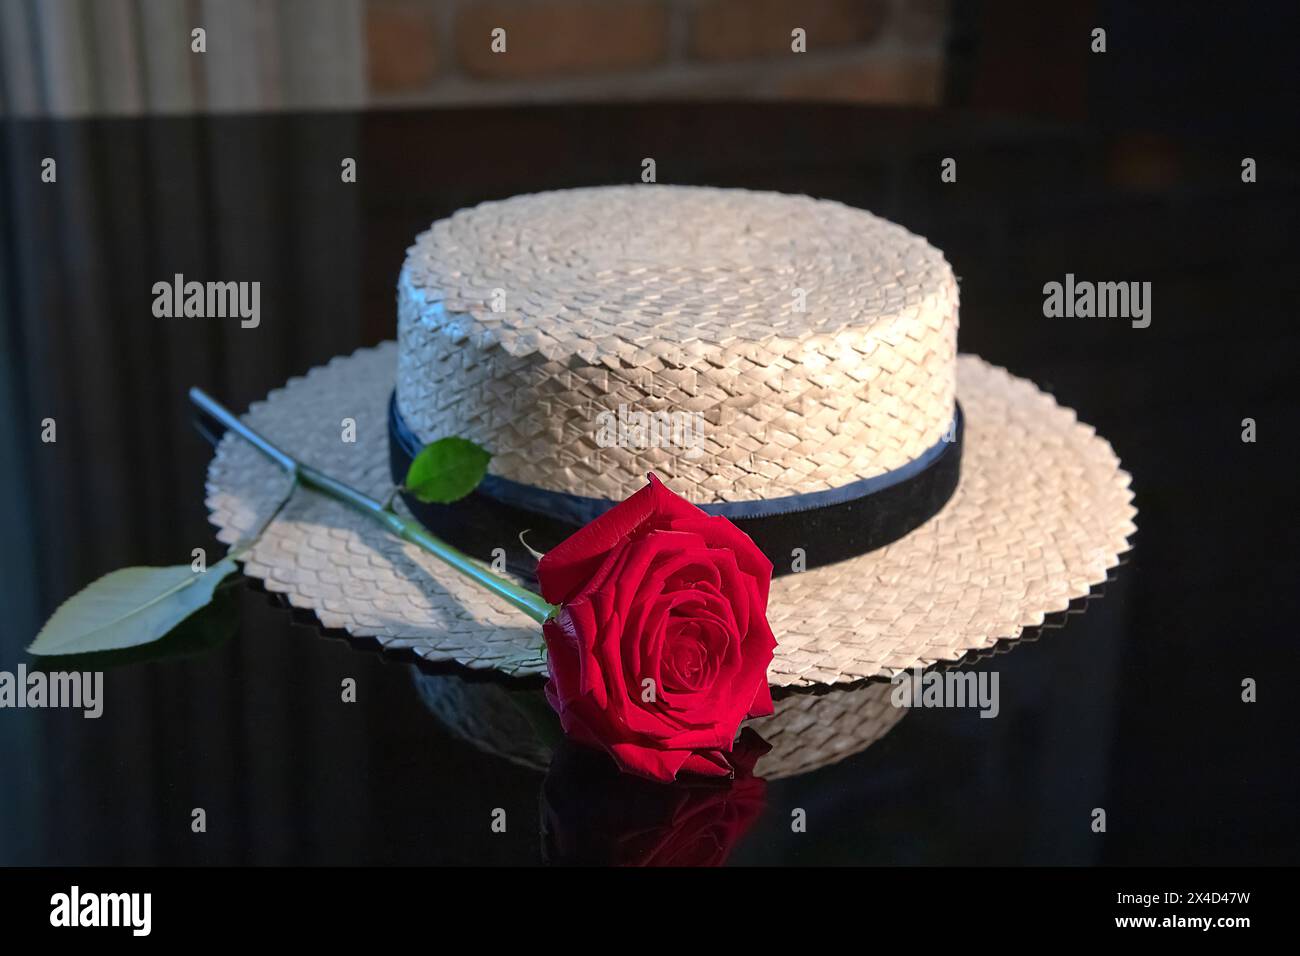 Chapeau de paille tissé blanc avec un ruban bleu et une rose rouge sur fond noir, reflet Banque D'Images